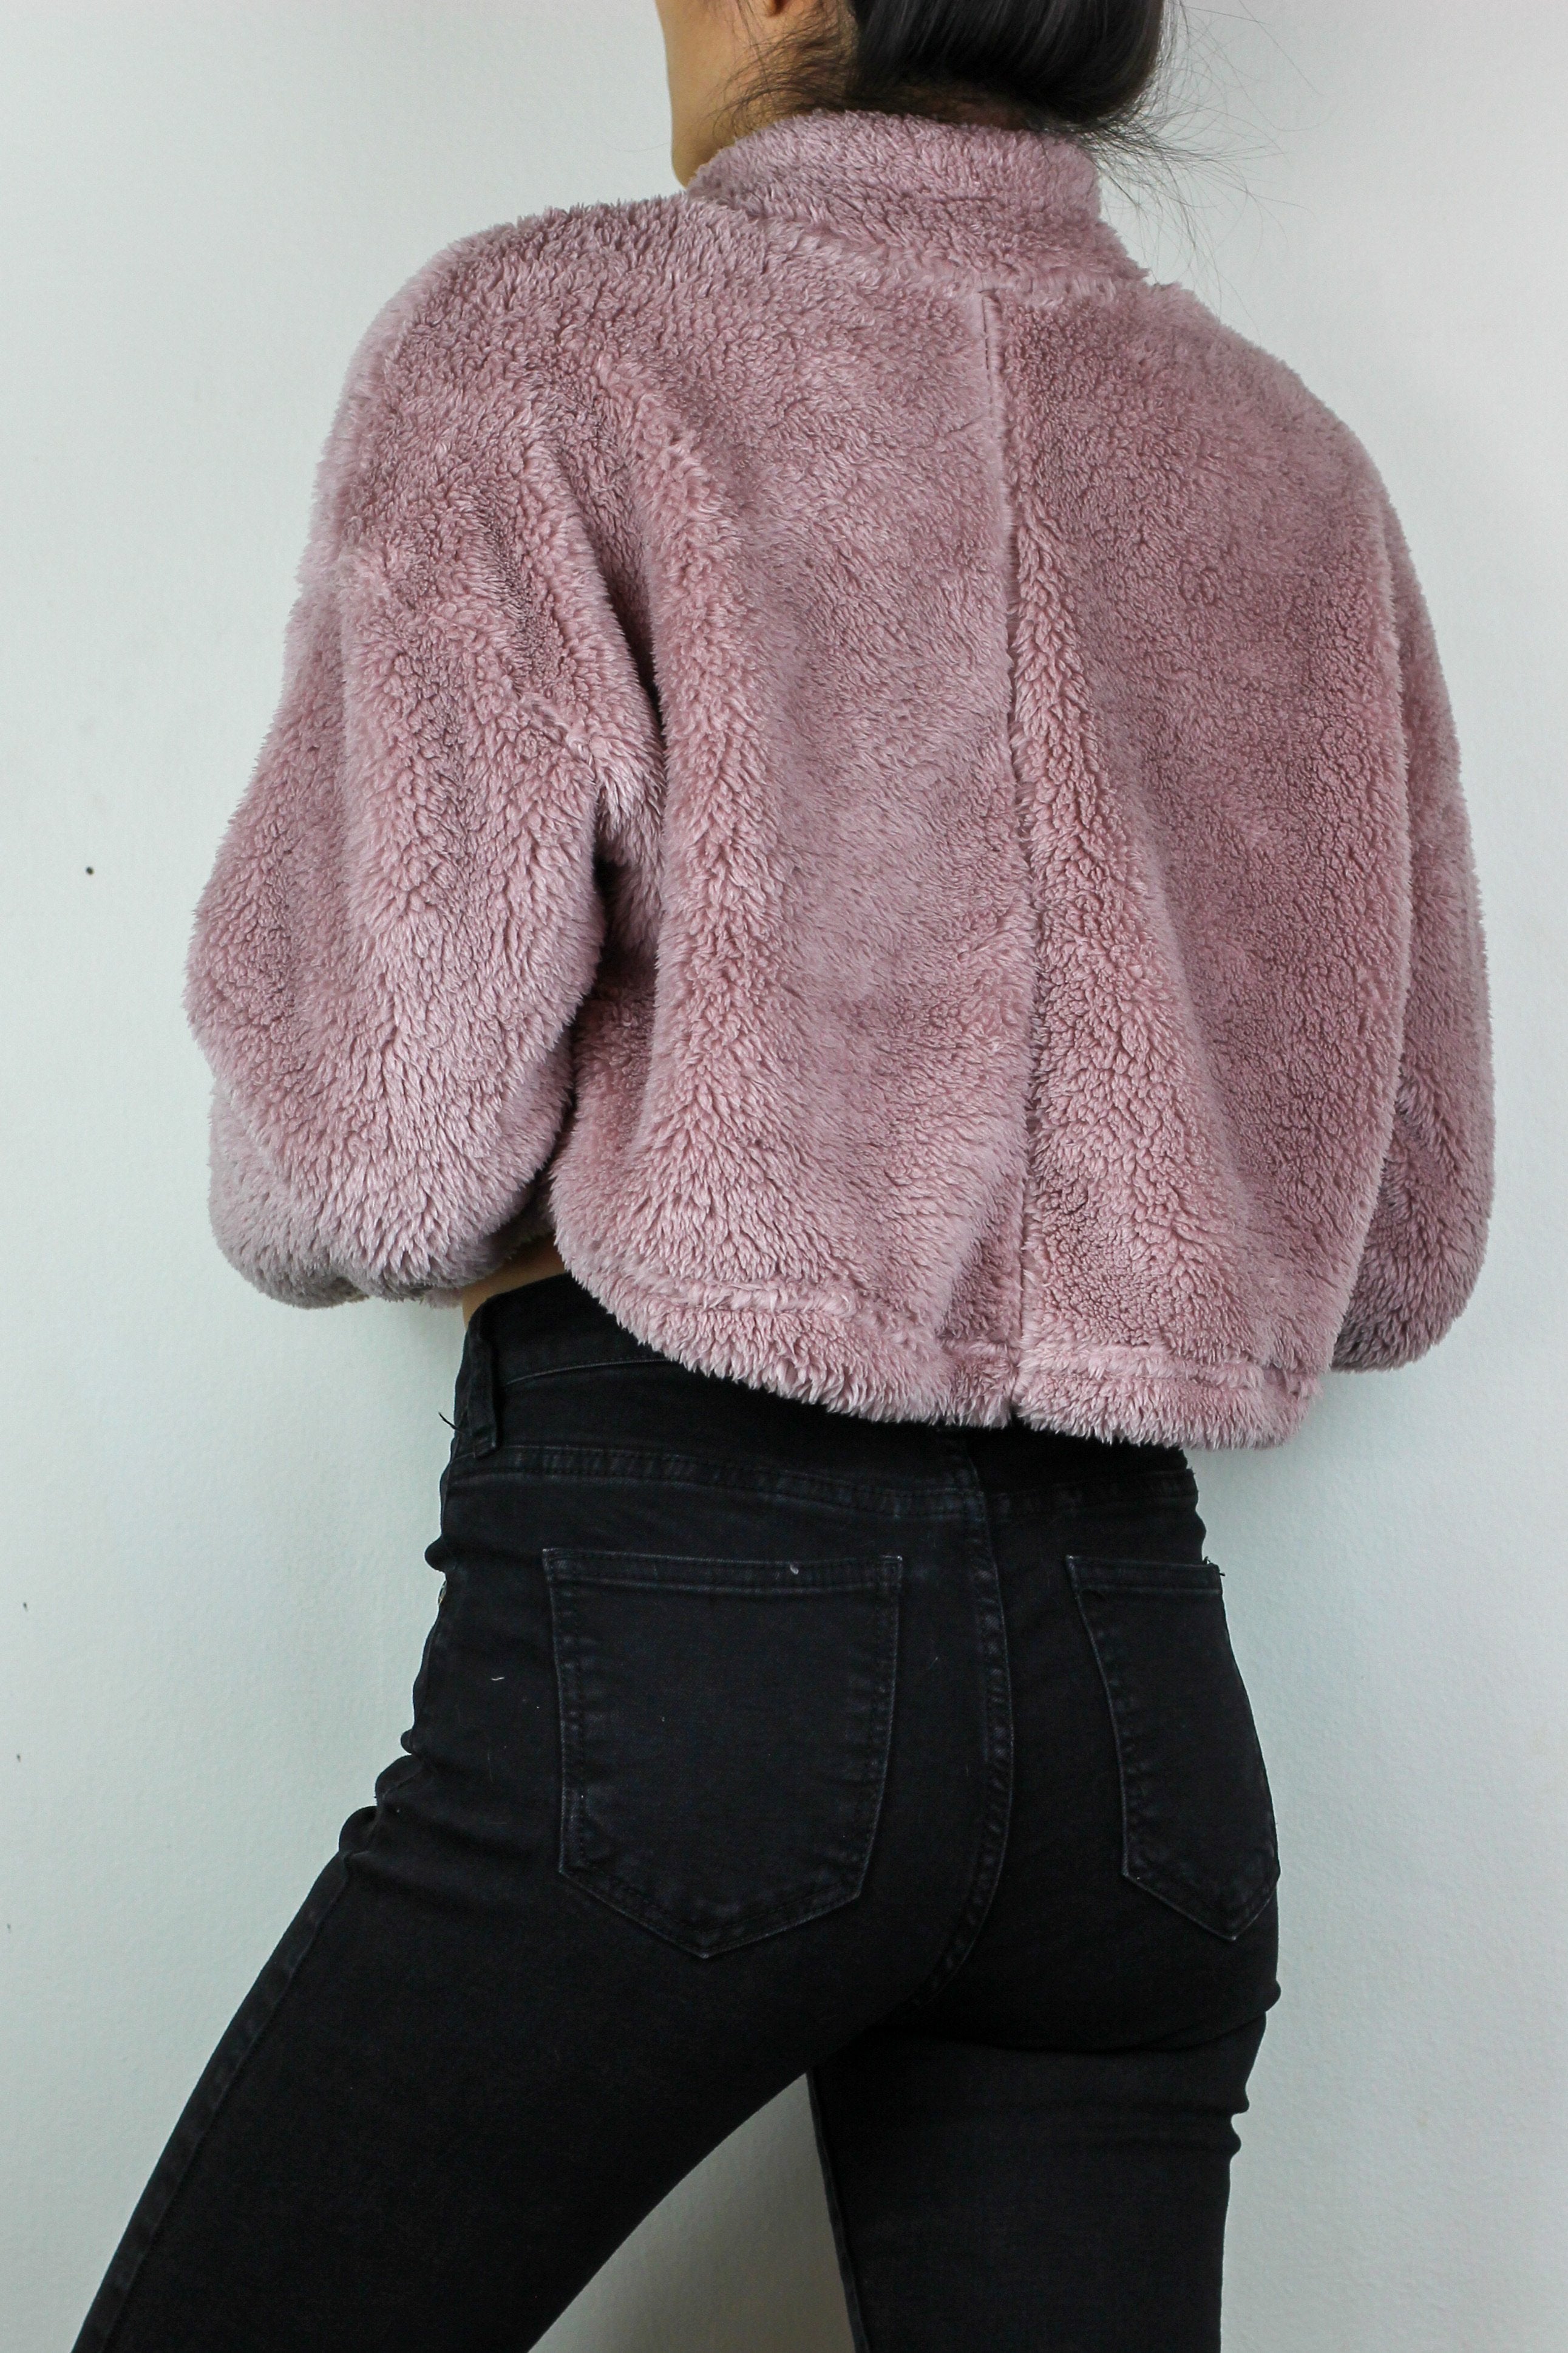 Waverly Crop Sweater